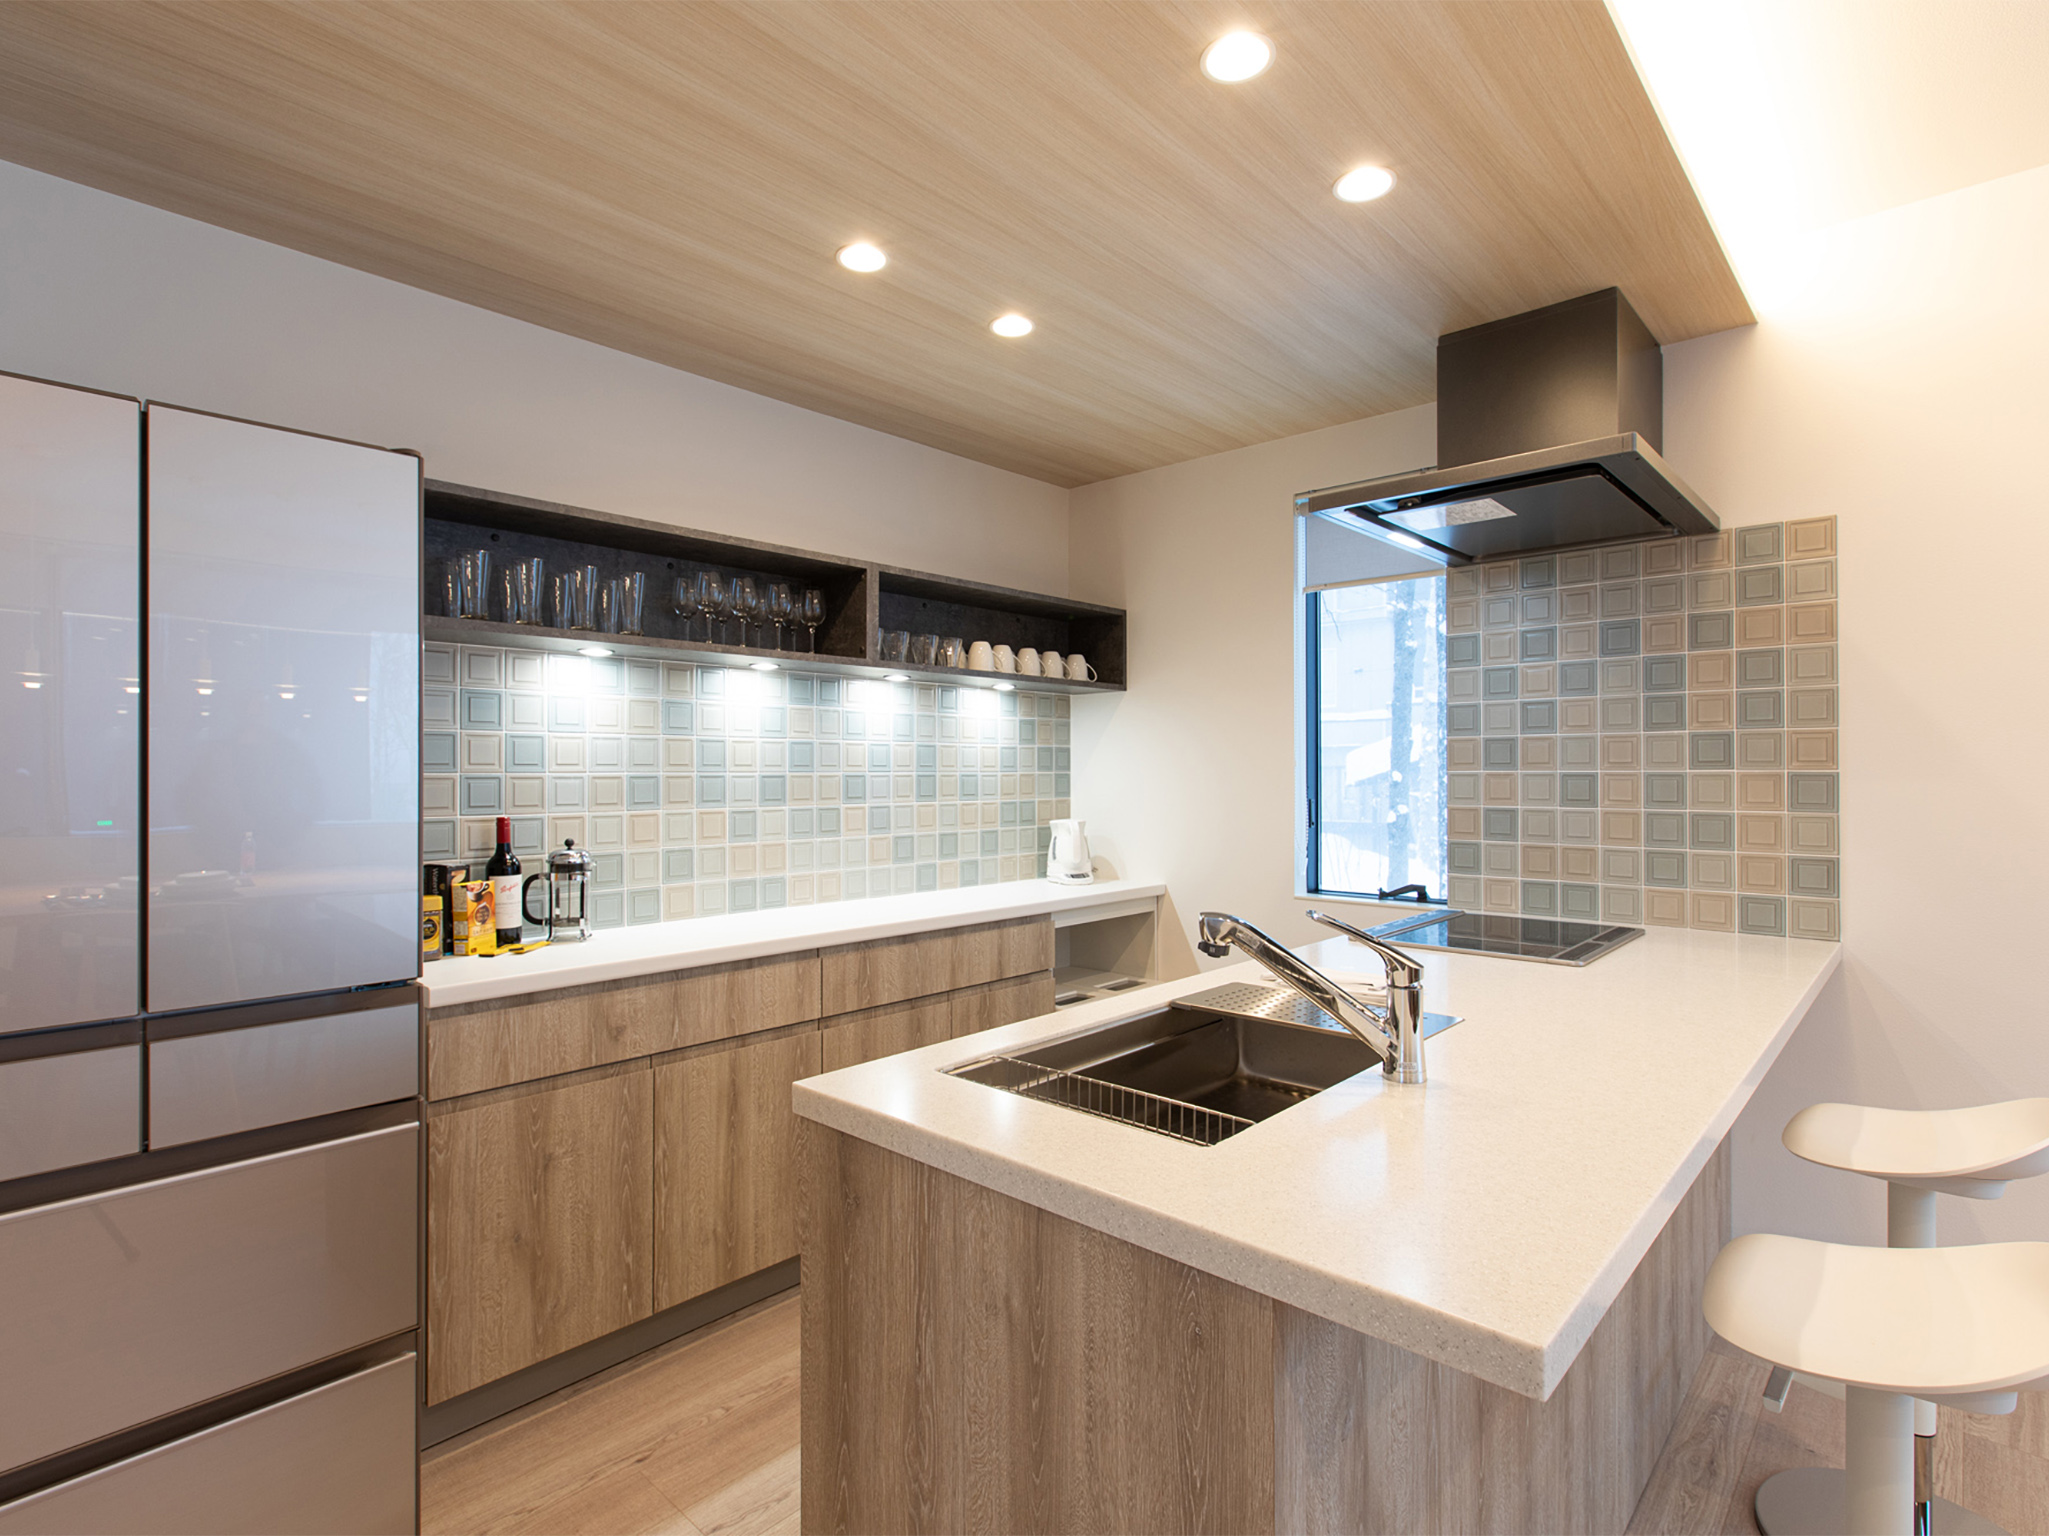 Olaf House - Modern kitchen details